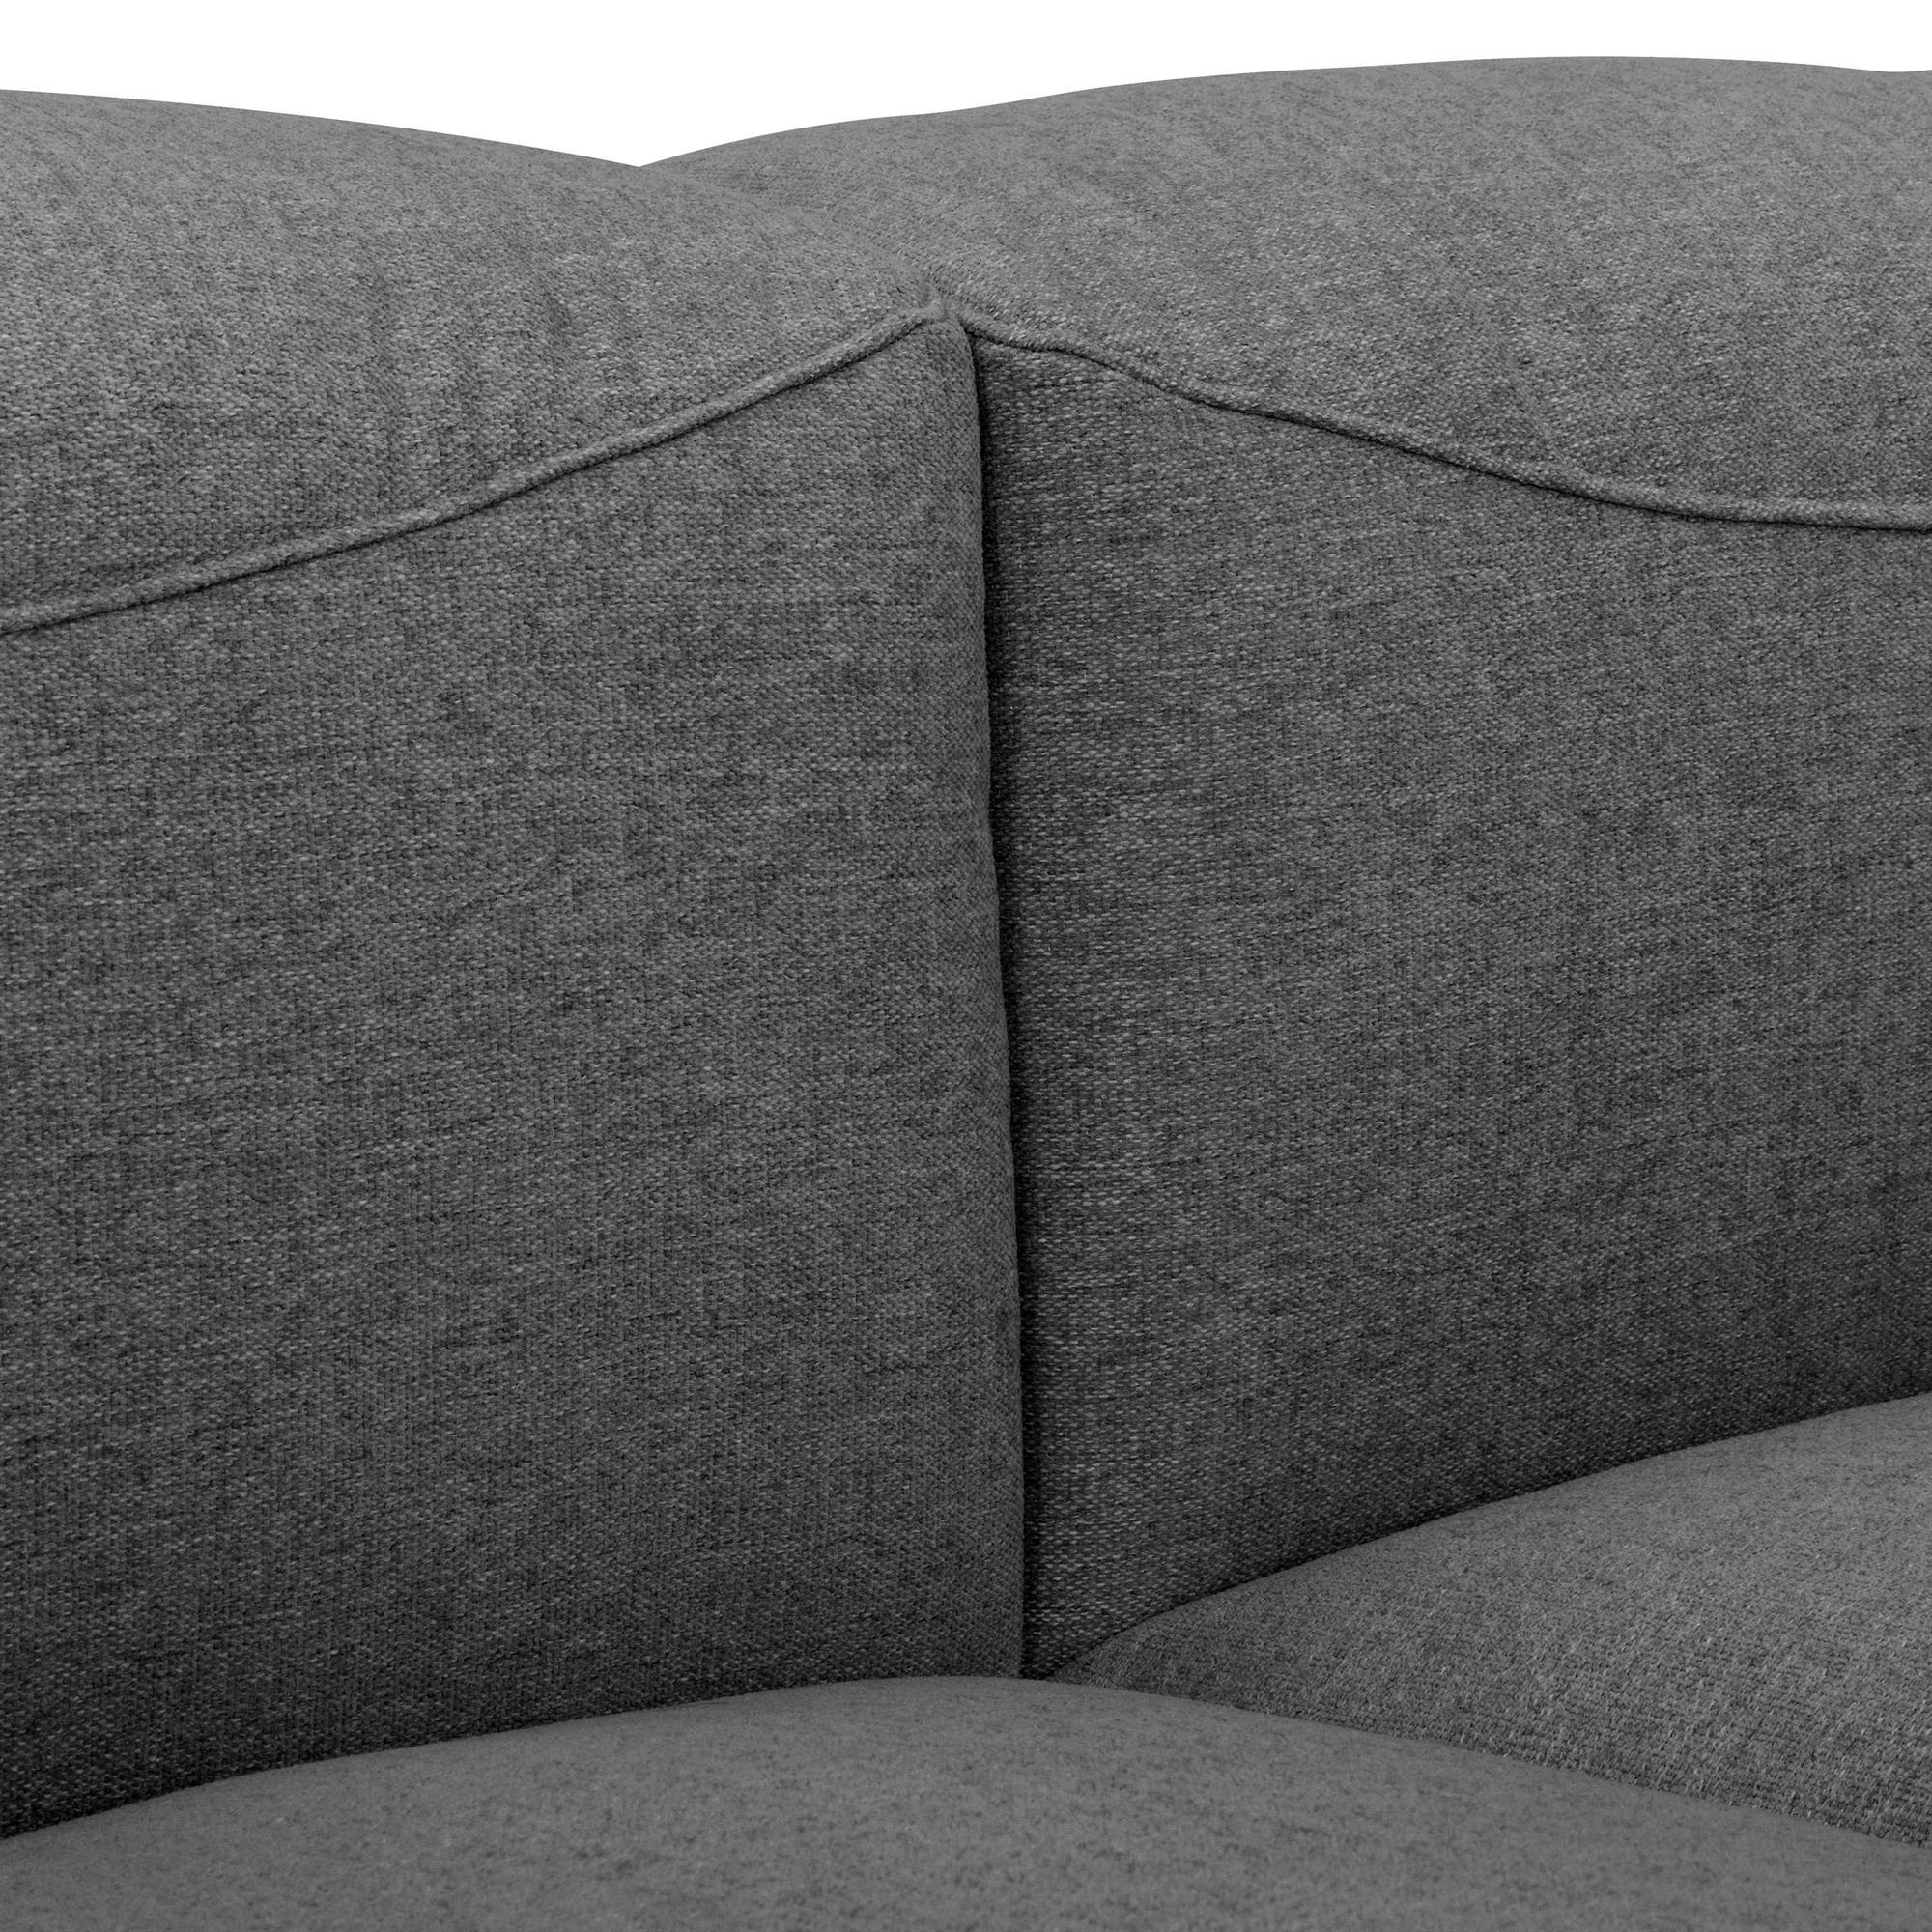 Sparpreis verarbeitet,bequemer Sofa Sitz Kessel inkl. 1 Kunststoff, Teile, Kostenlosem Kaleigh Versand aufm hochwertig Bezug 3-Sitzer Flachgewebe Sofa 58